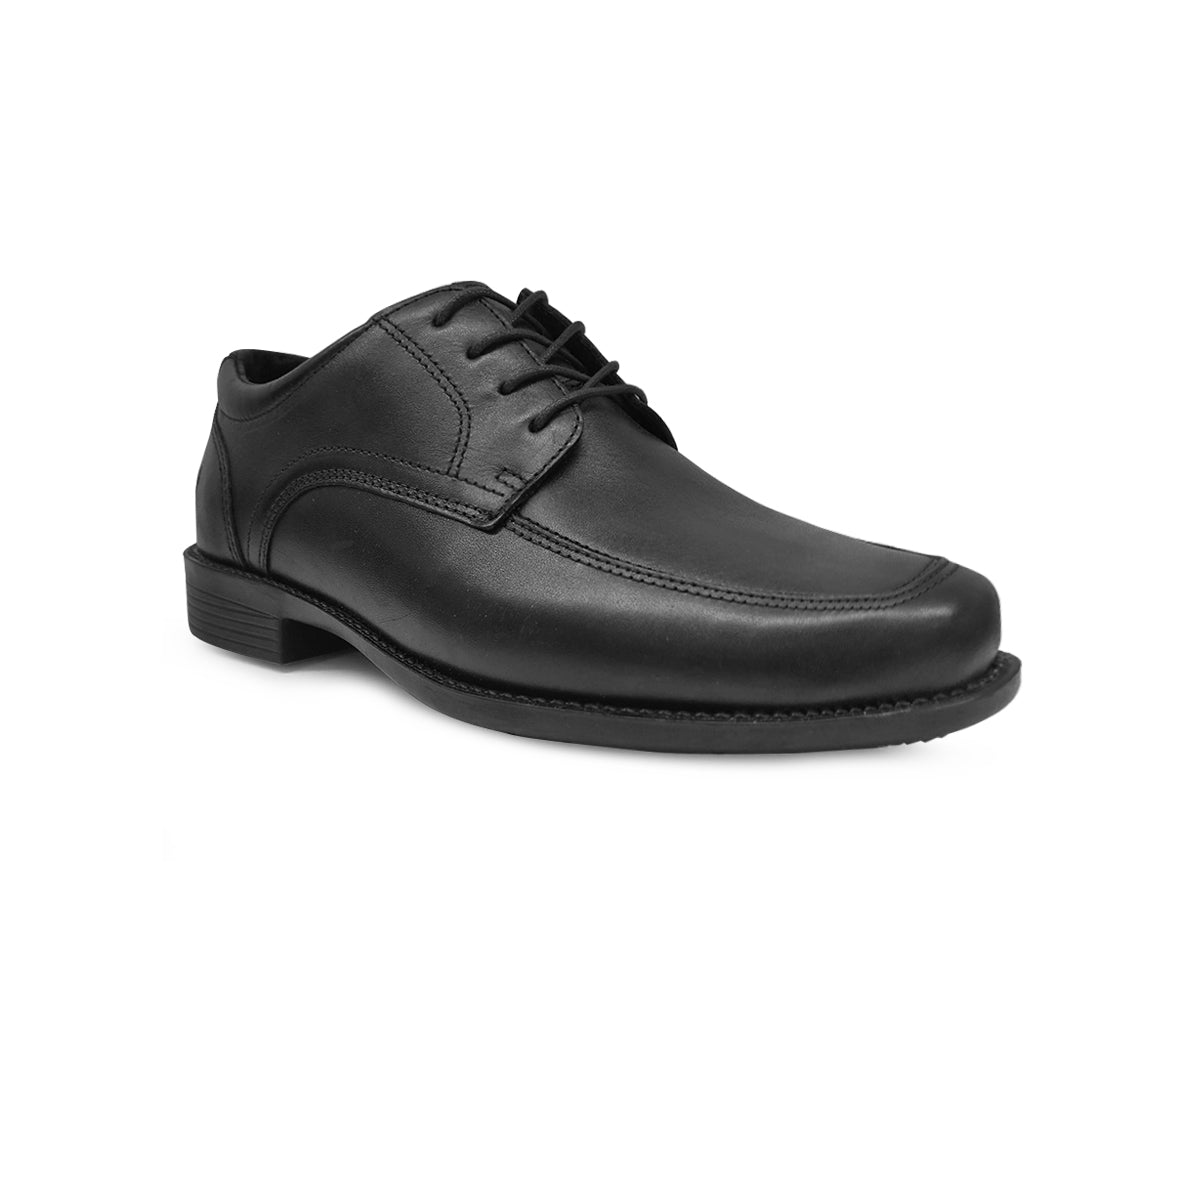 Zapatos Oxford hombre negro con suela de piel - RICKFORD